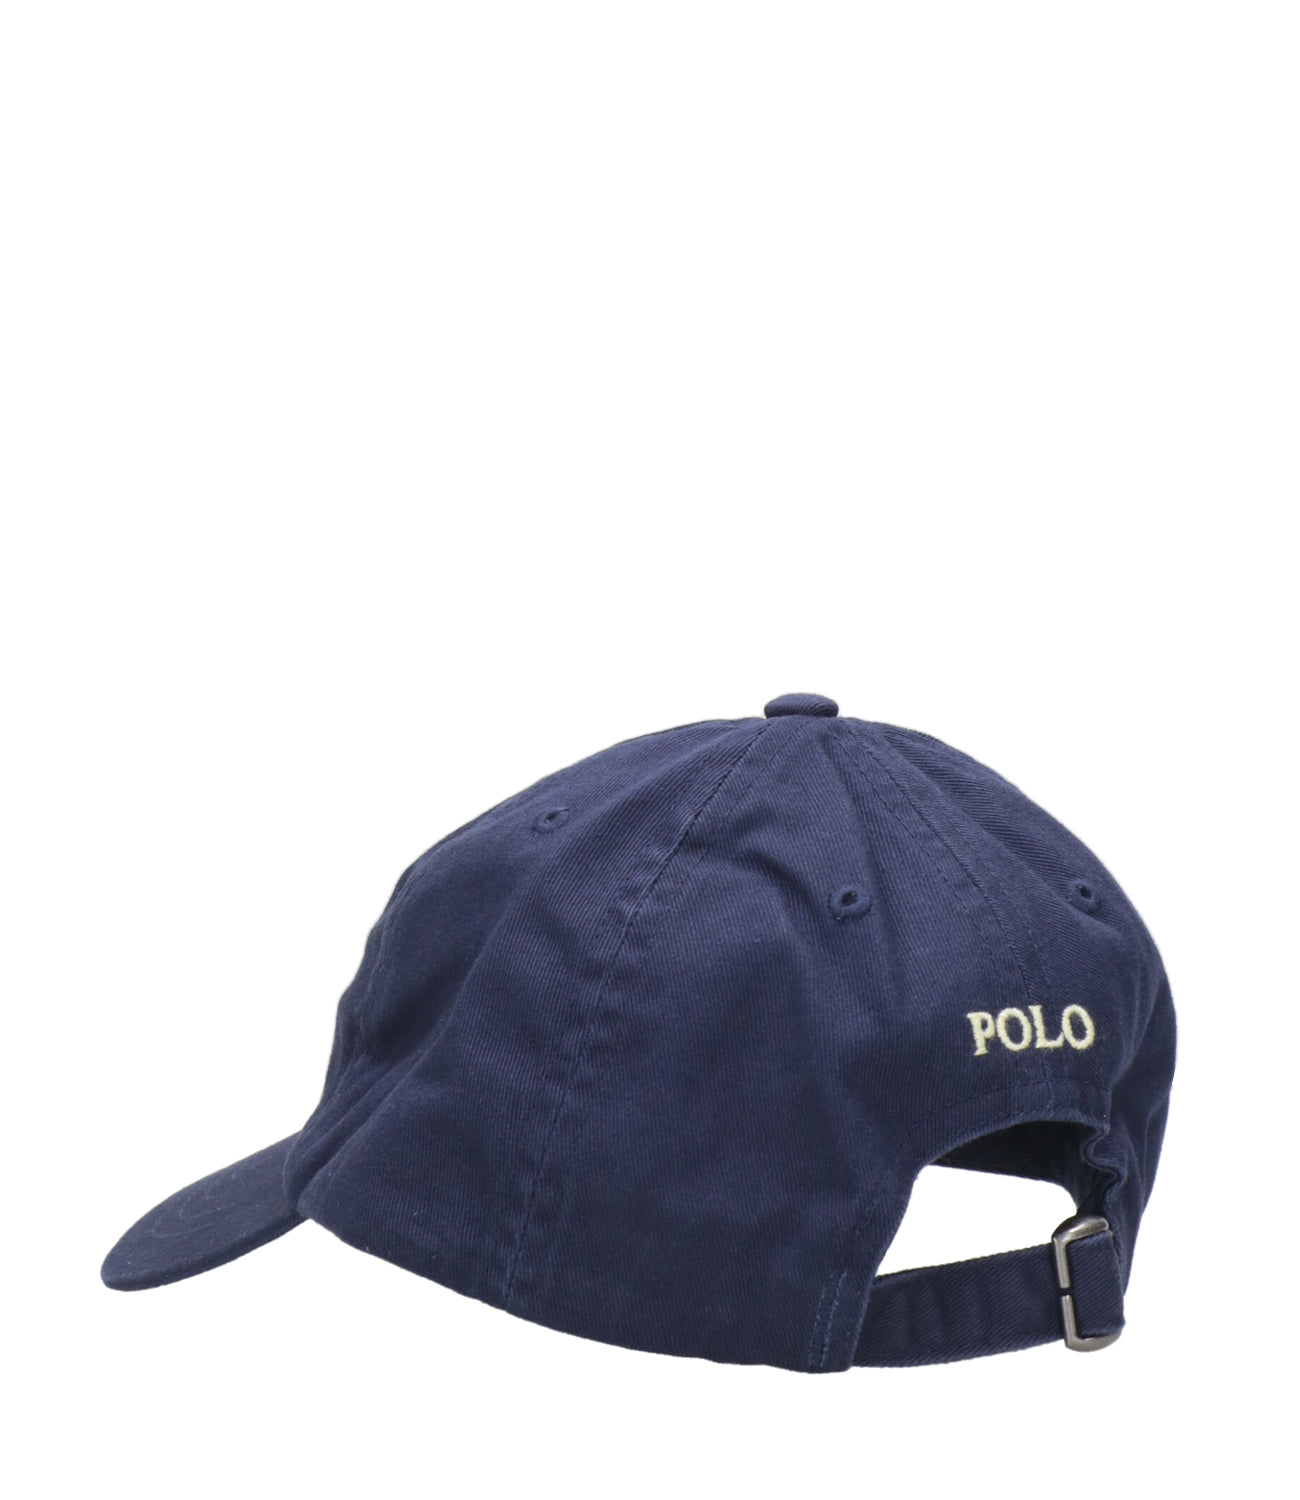 Ralph Lauren Childrenswear | Navy Blue Hat